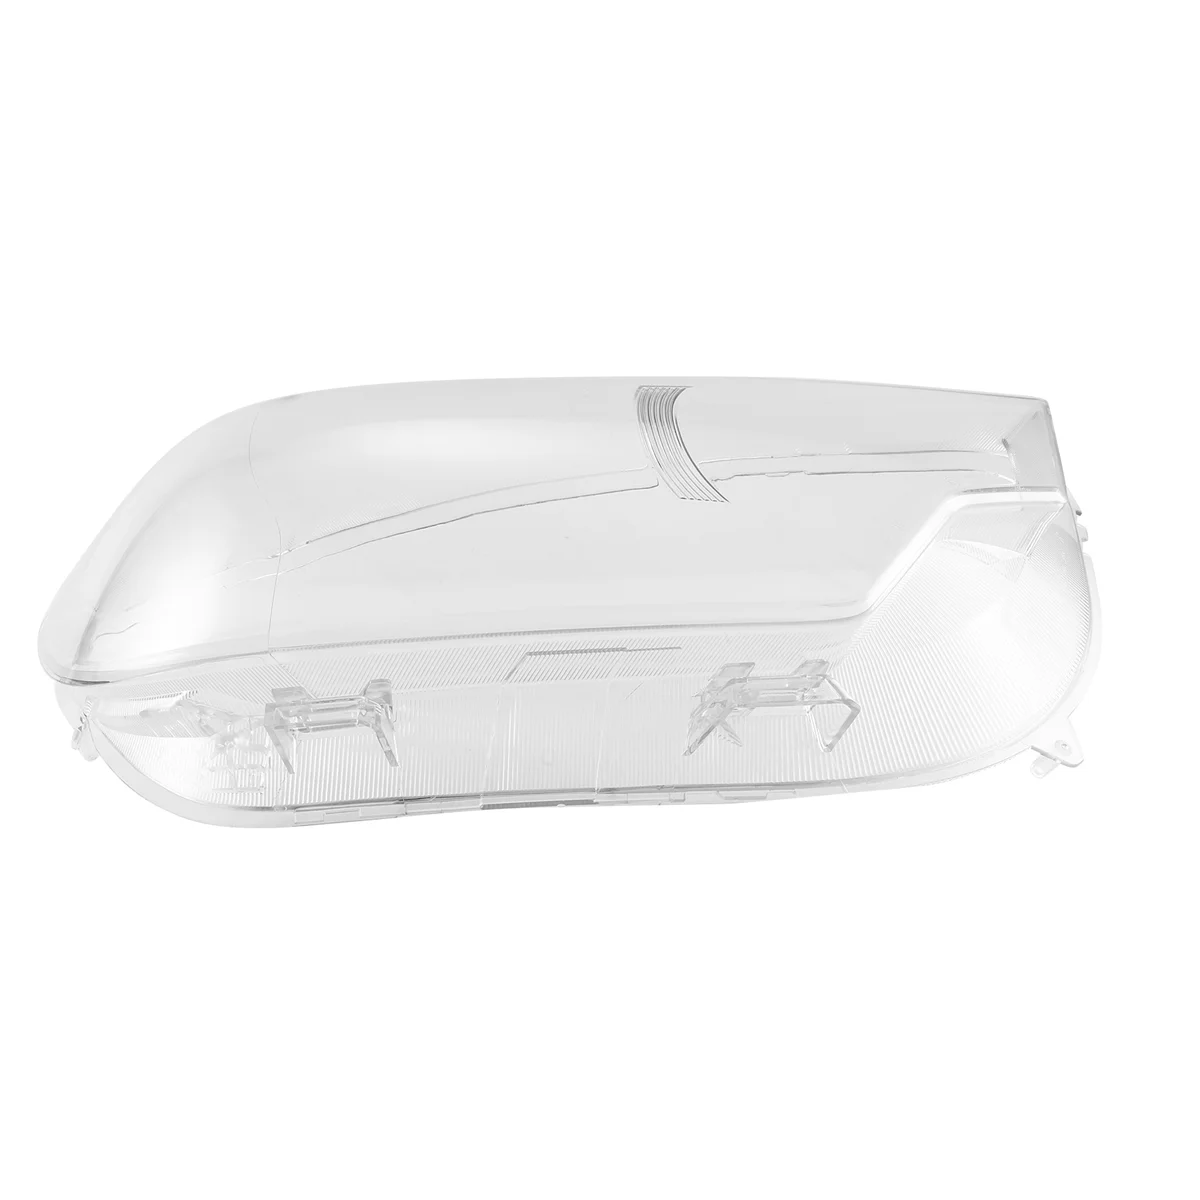 

Автомобильная передняя лампа для головного света, прозрачный абажур, оболочка для фары Jac Shuailing T8 2018-2022, правая крышка фары